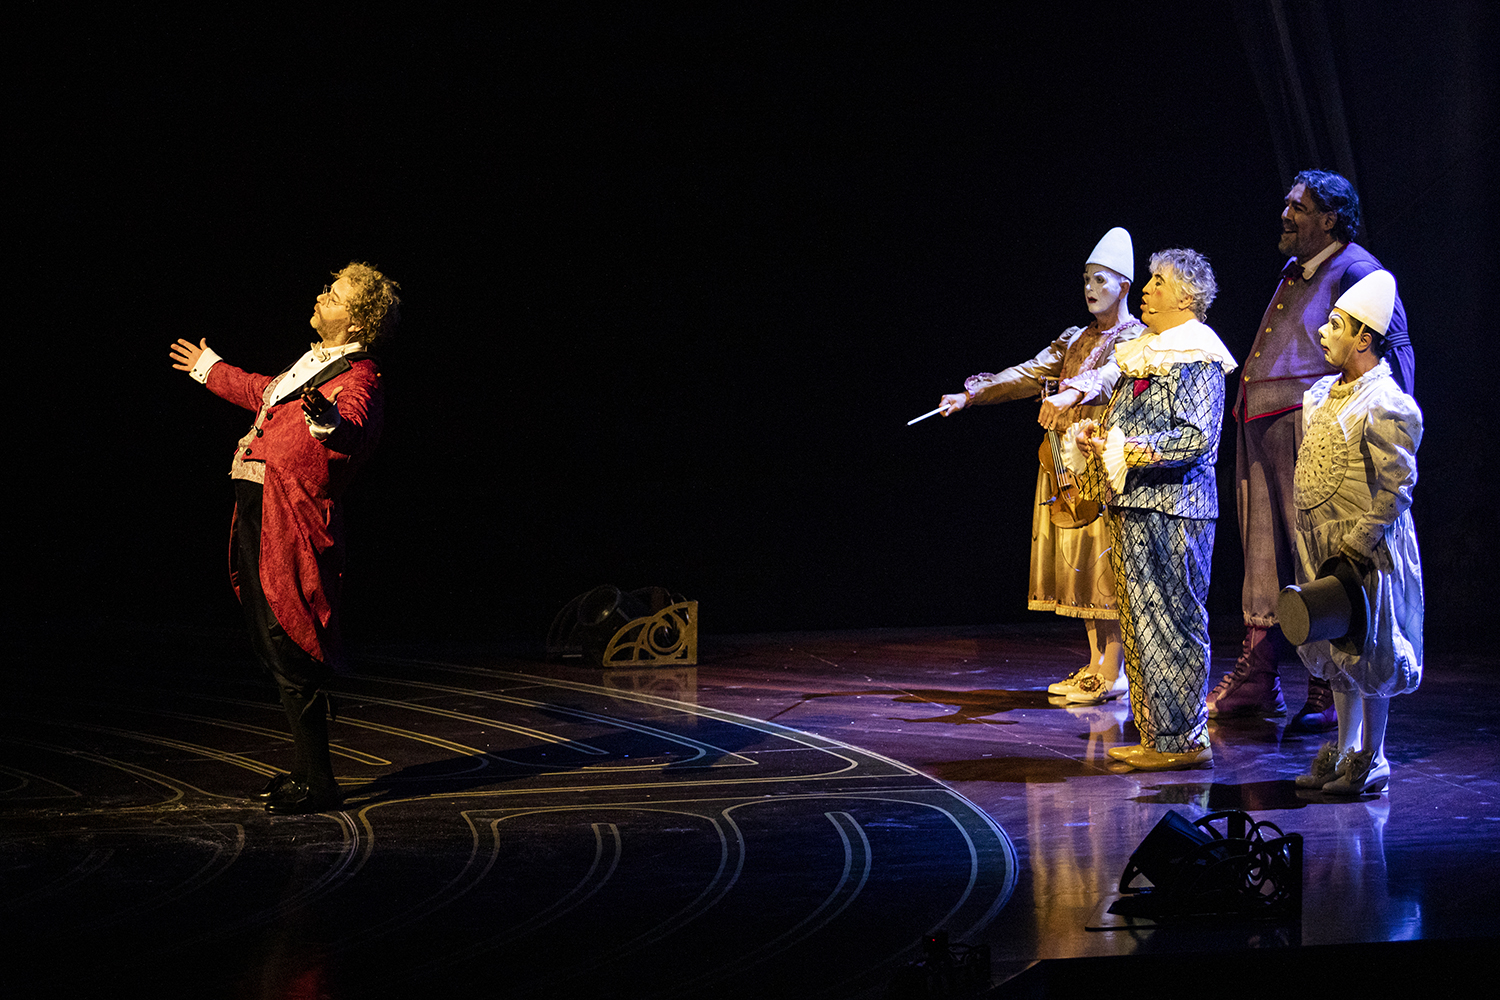 Cirque du Soleil vuelve a México con el espectacular show "Corteo" 5